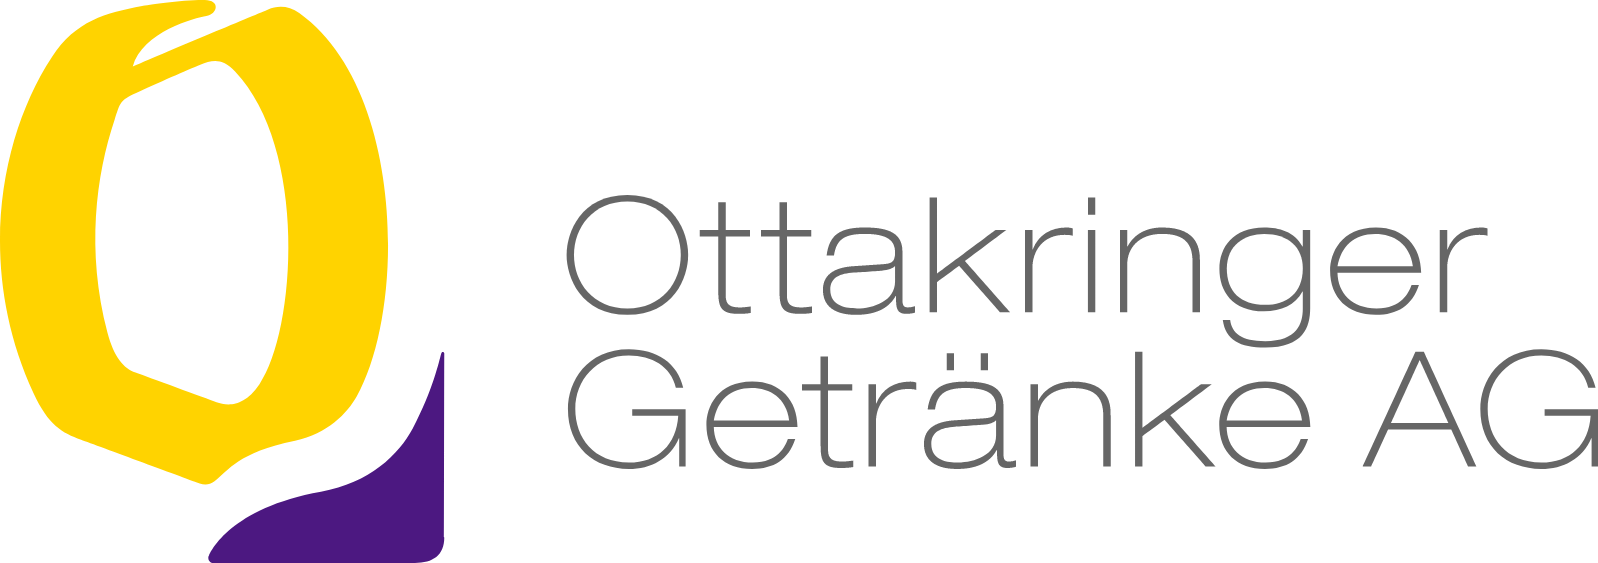 Ottakringer Getränke logo large (transparent PNG)